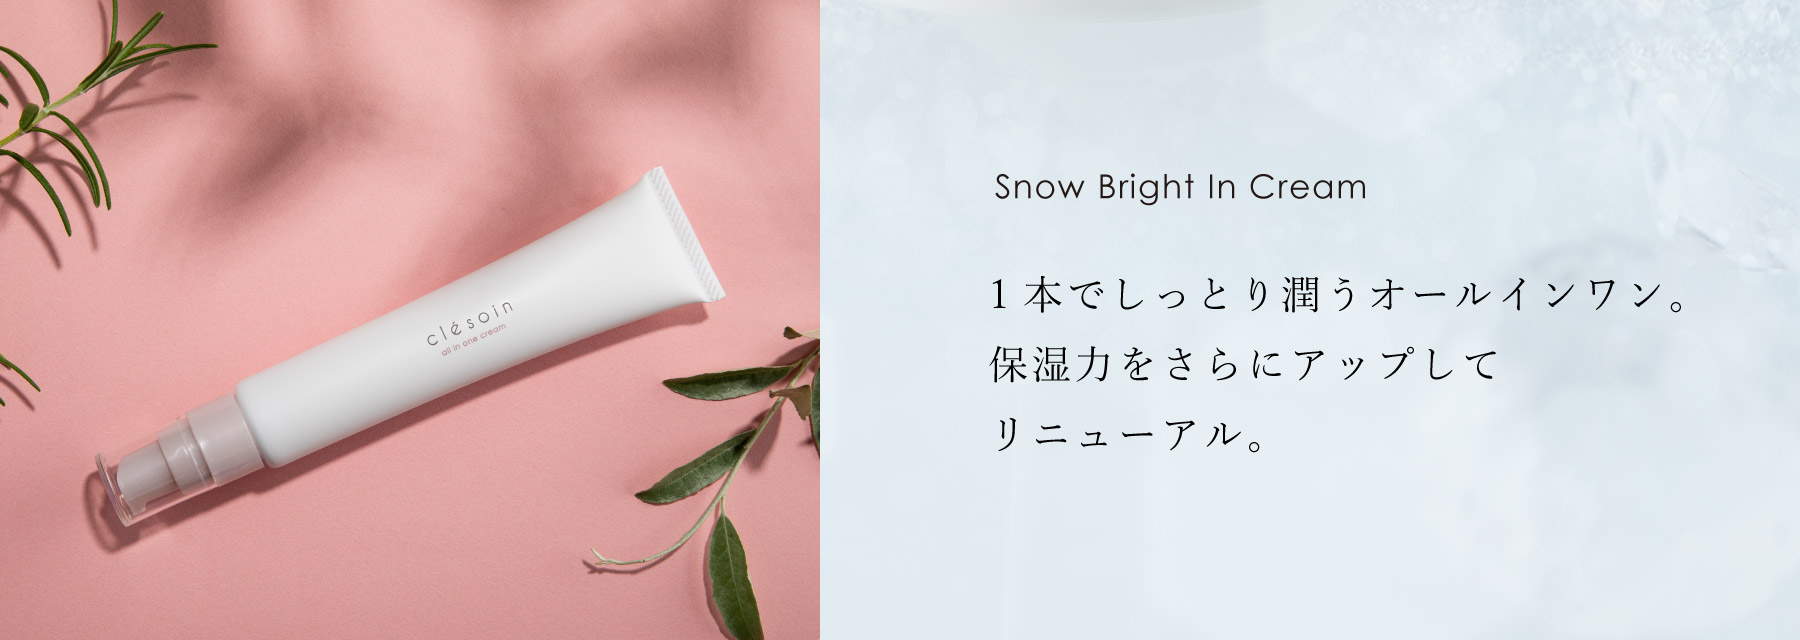 スノーブライトインクリーム - Snow Bright In Cream - 1本でしっとり潤うオールインワン。保湿力をさらにアップしてリニューアル